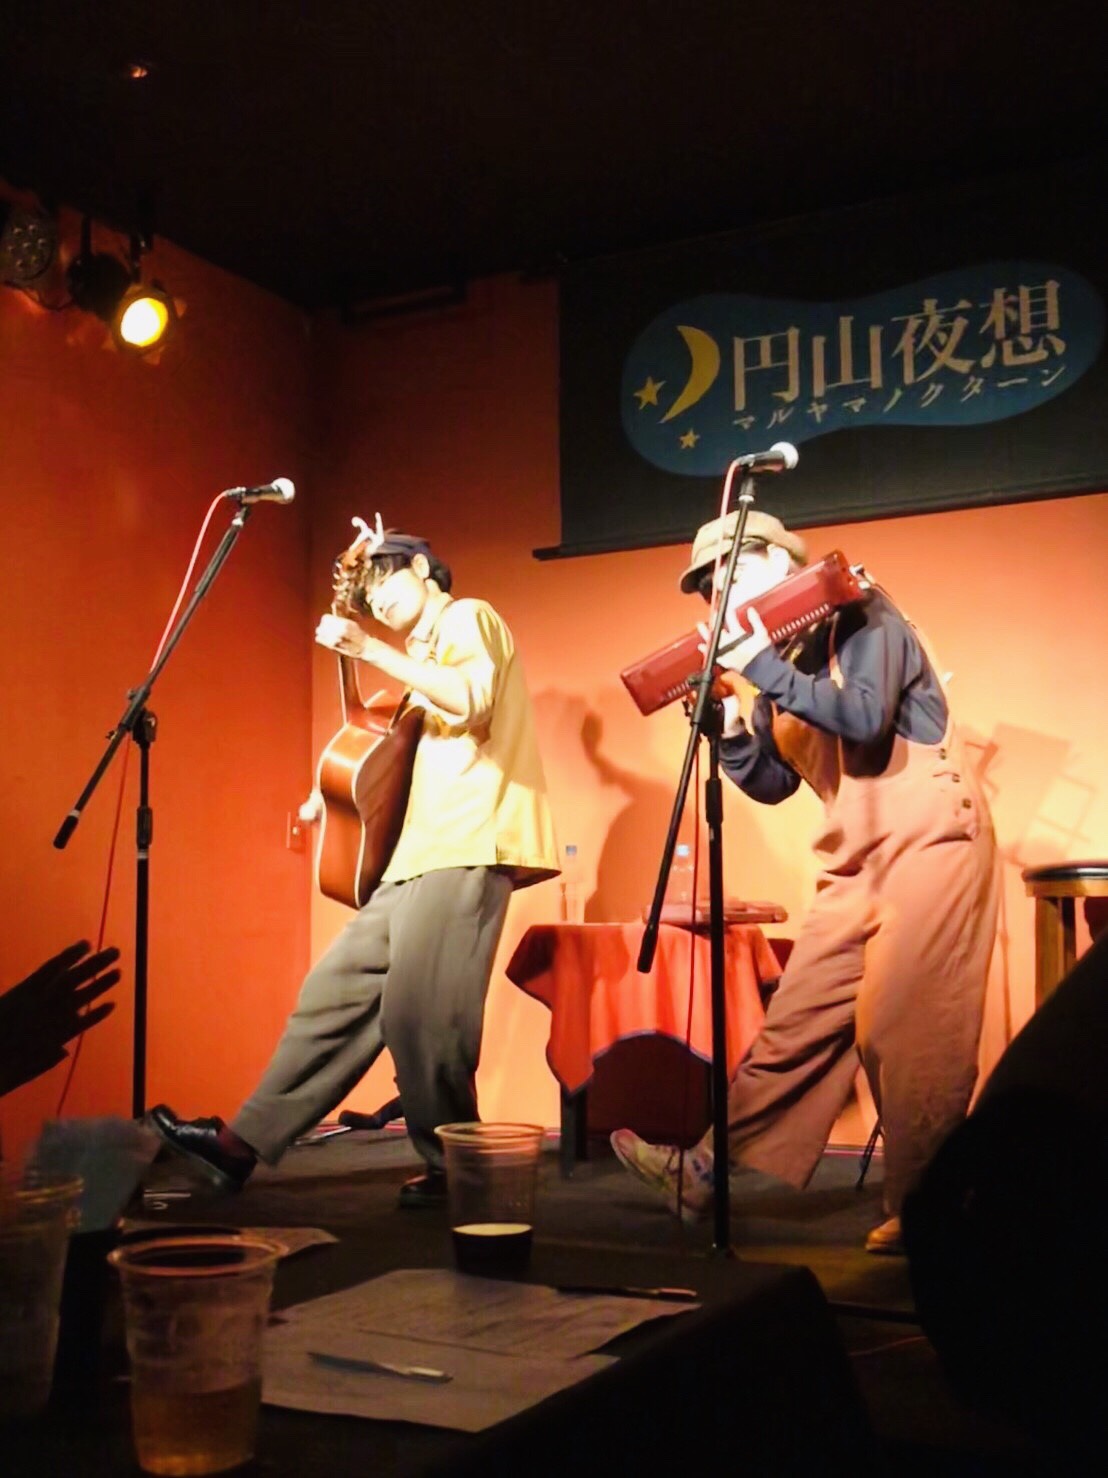 マルヤマ ノクターンのステージでライブを行う「あずけん」の２人。左からアコースティックギターを抱える武内建、ピアニカを演奏する森田杏美。２人で右足を伸ばし、同じポーズを取っているところ。